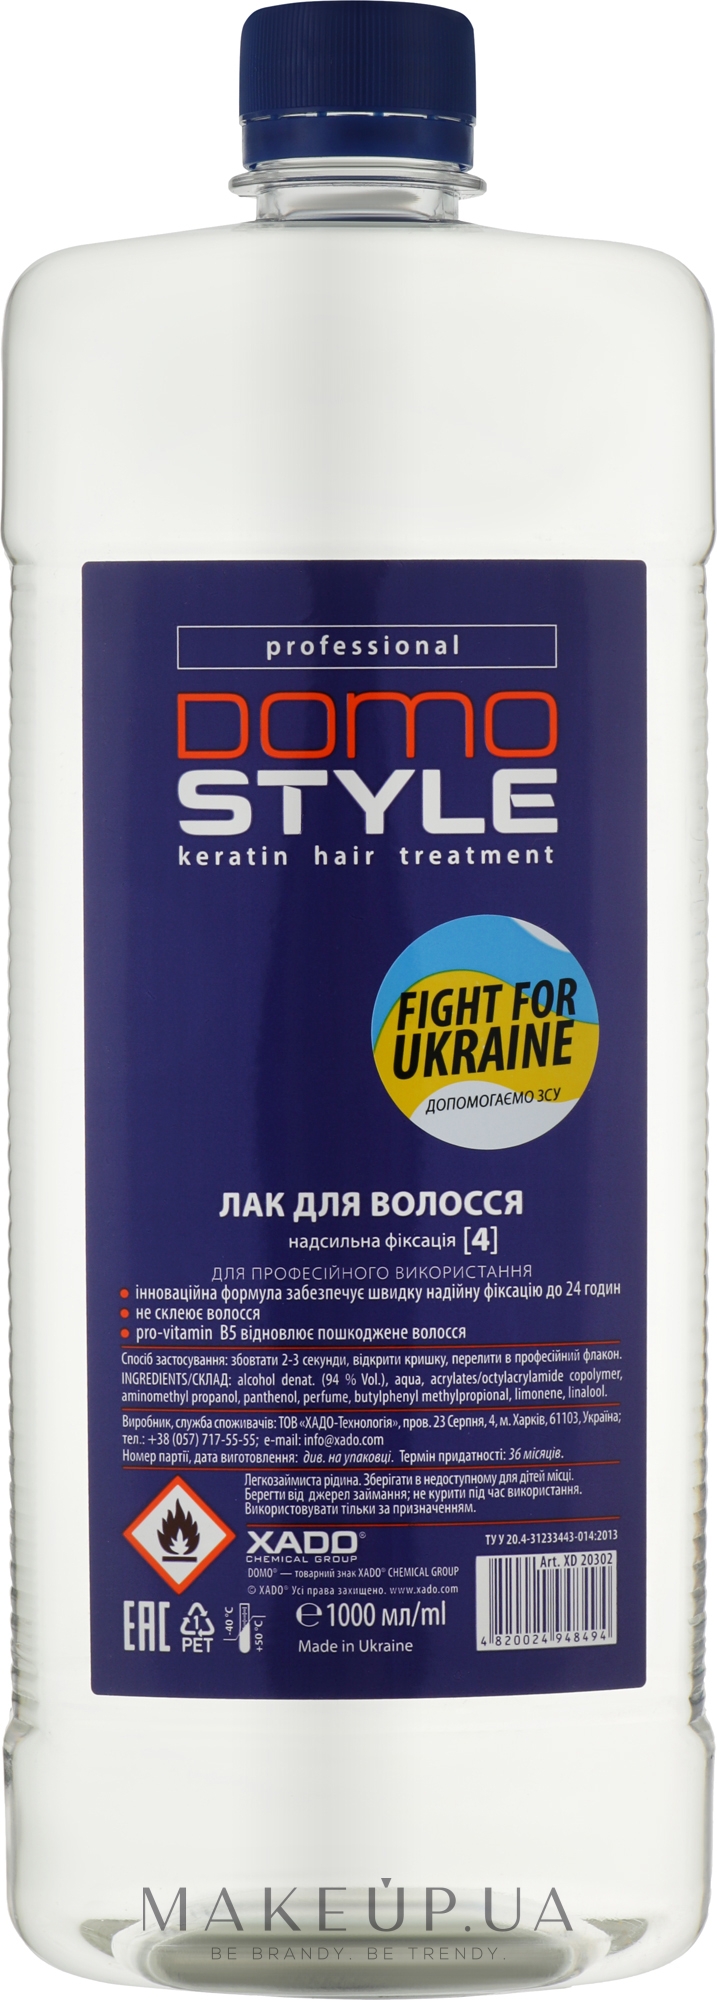 Рідкий лак для волосся, надсильна фіксація (4) - Domo — фото 1000ml